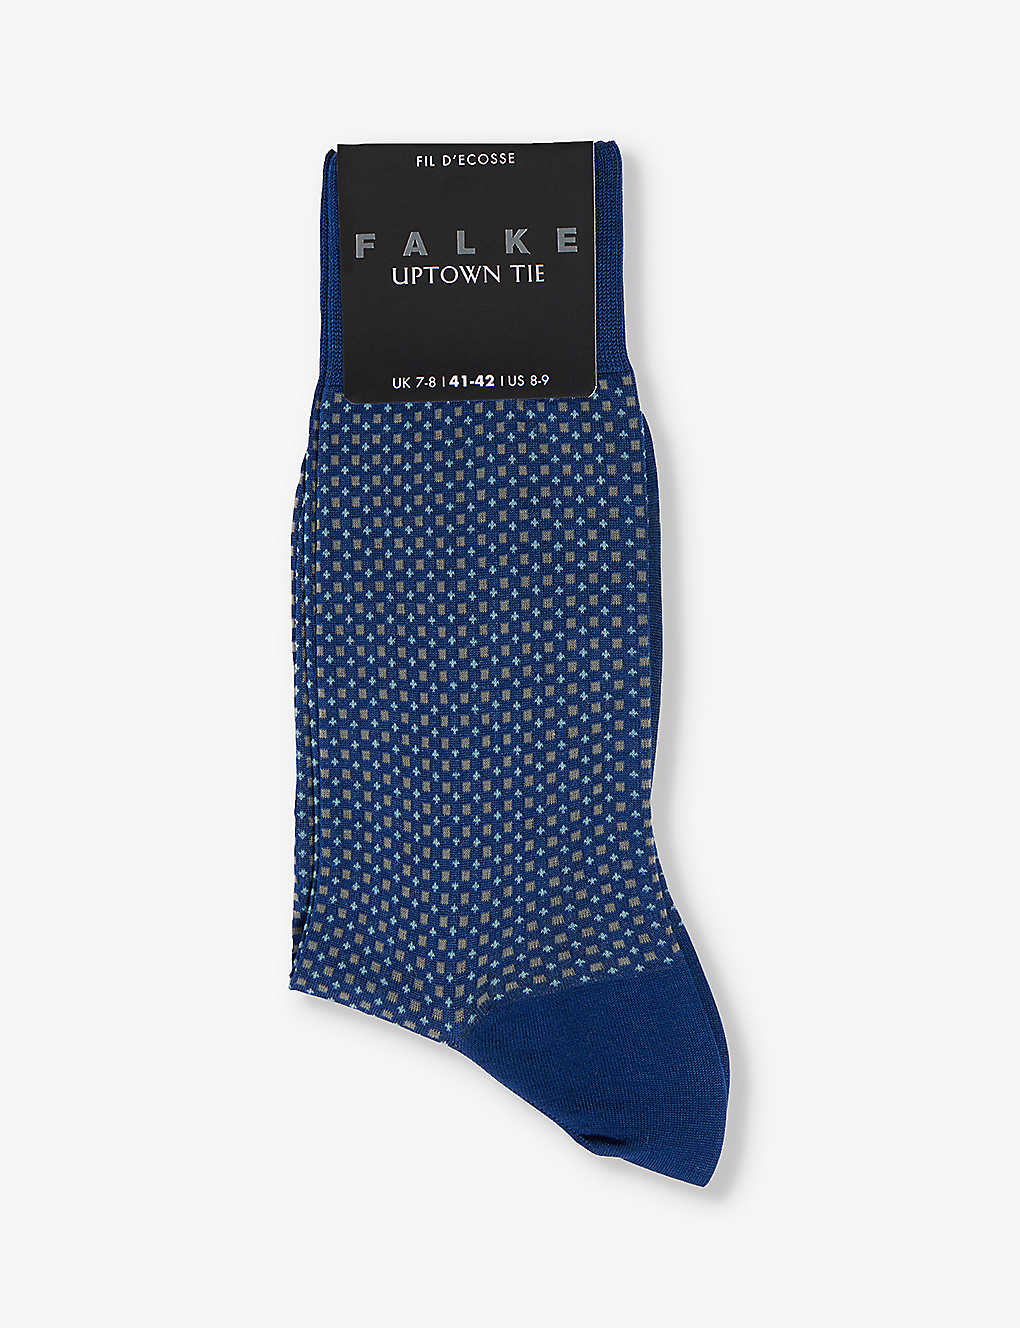 Falke Uptown Tie Socks In Blue